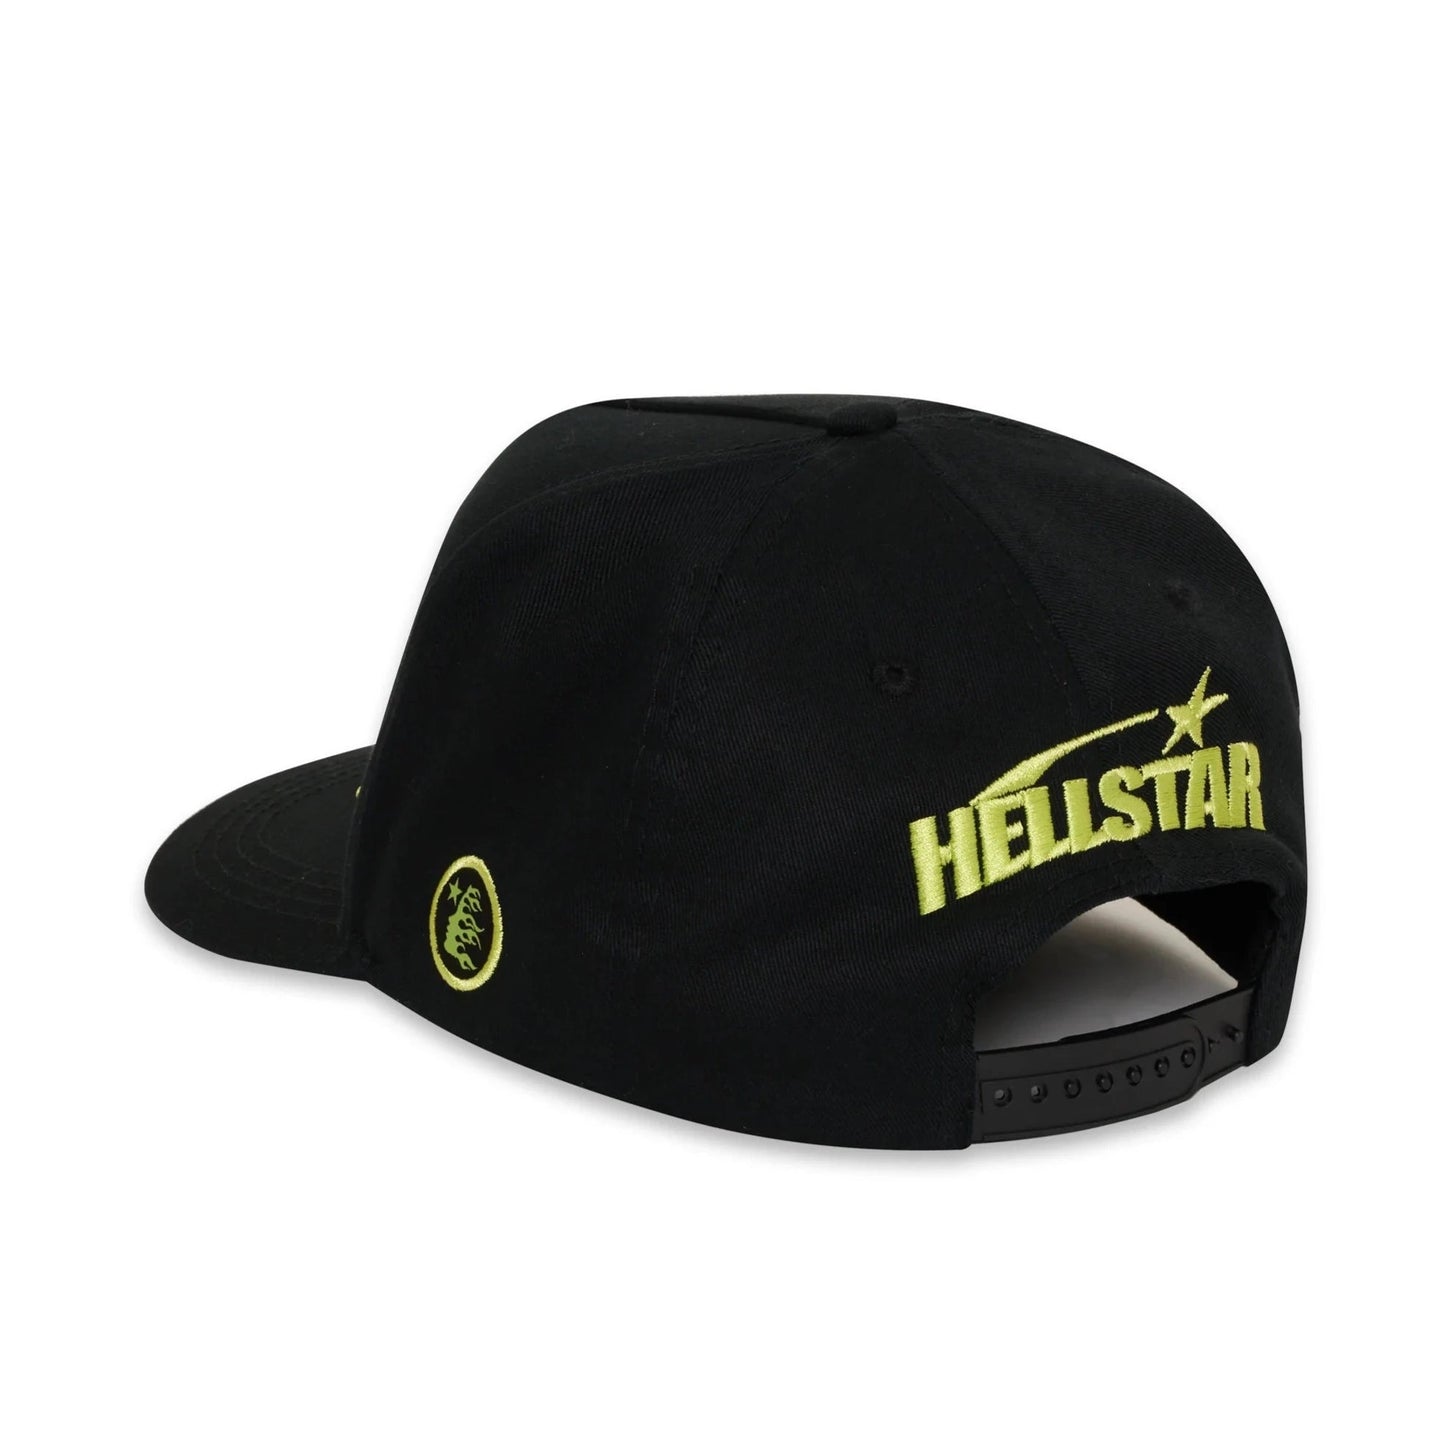 Hellstar NY Snapback Hat Neon - Sneakersbe Sneakers Sale Online